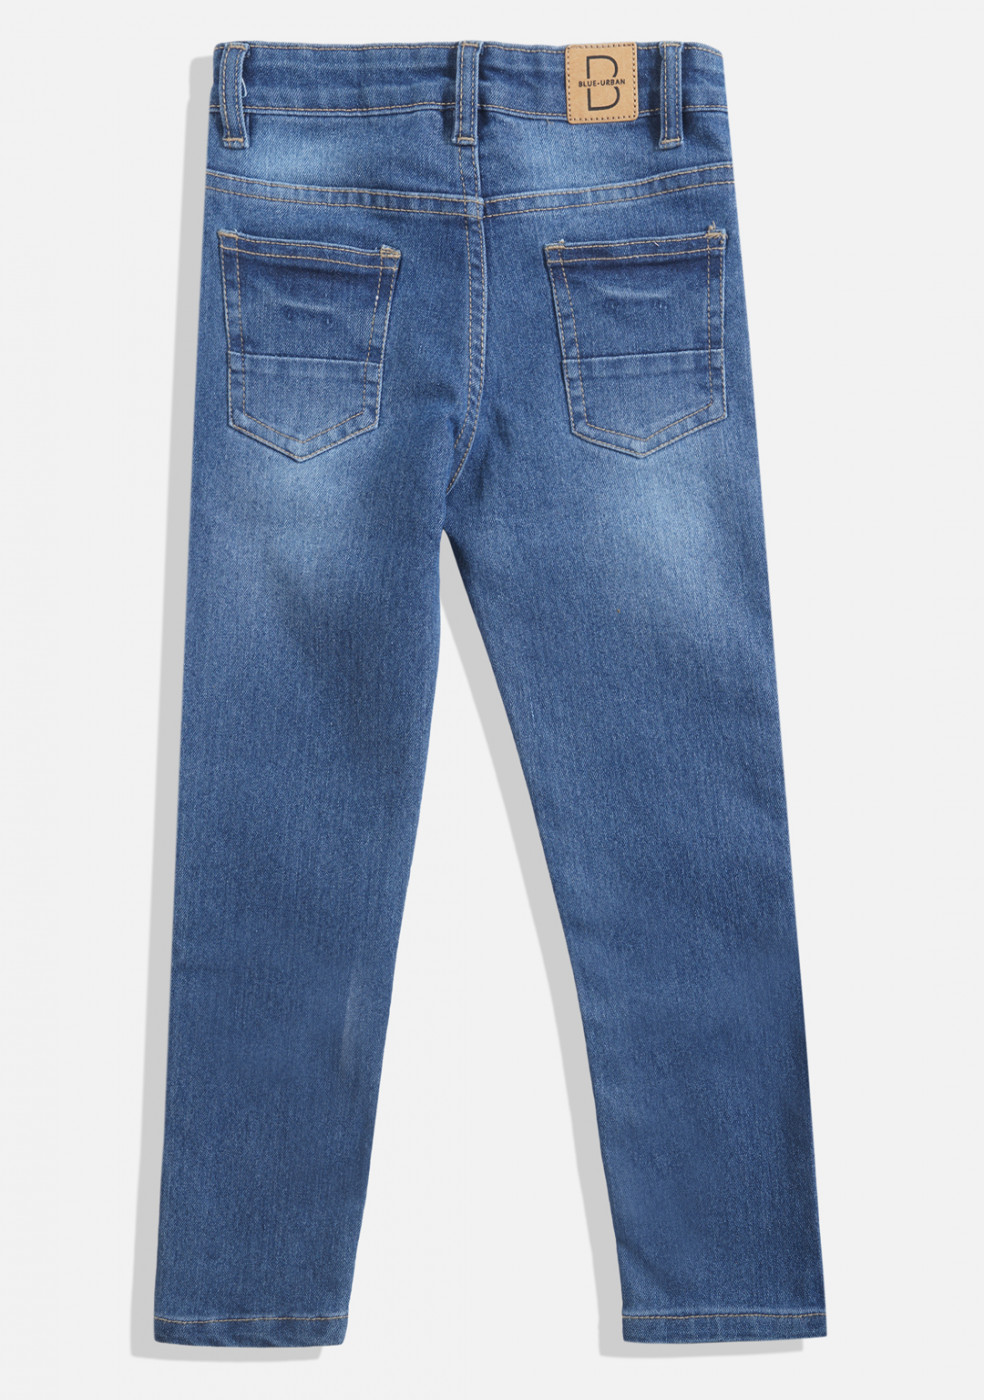 Blue Denim Jeans For Boys